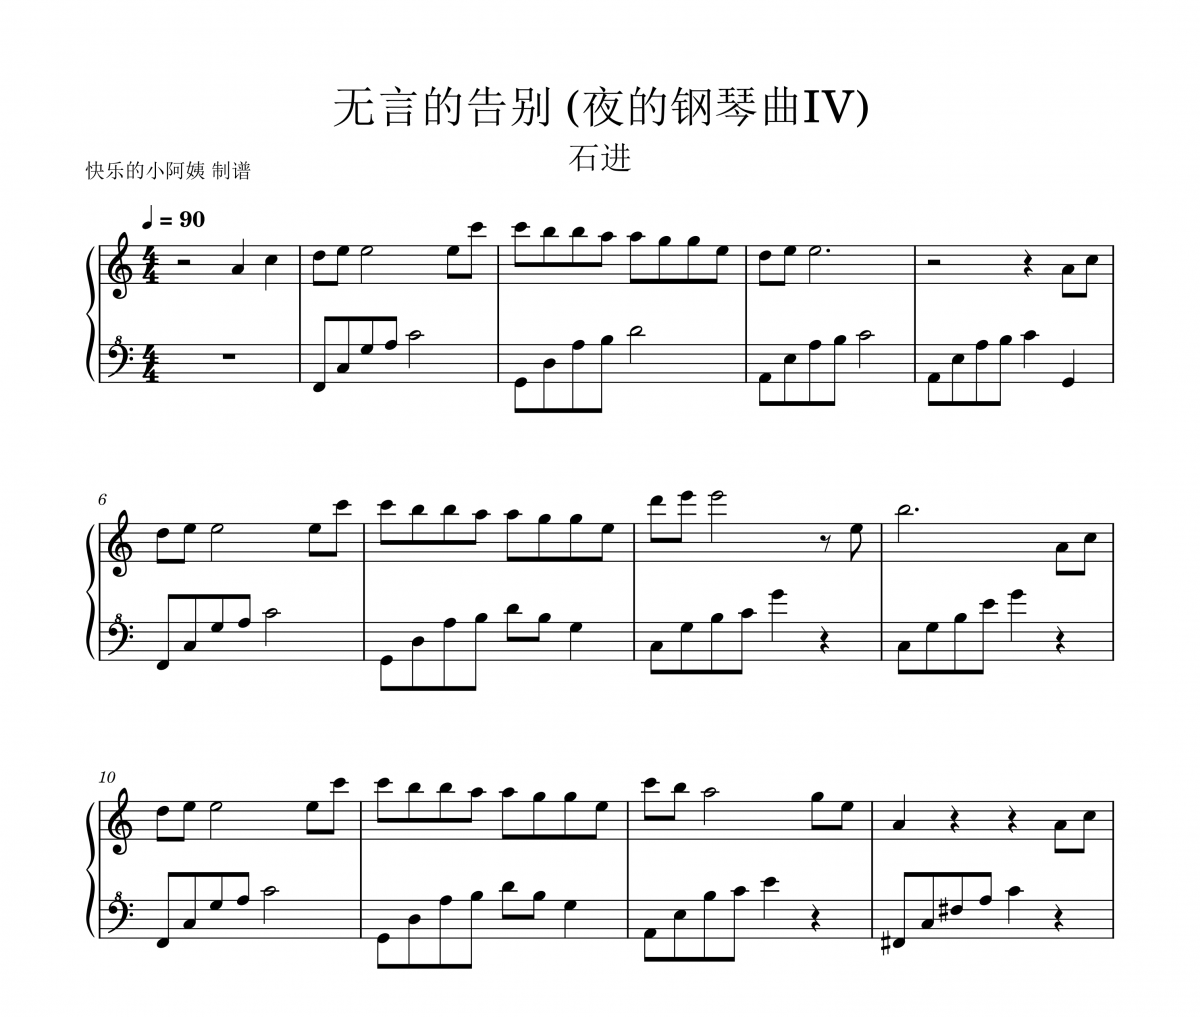 石进-无言的告别》(夜的钢琴曲IV)五线谱|钢琴谱